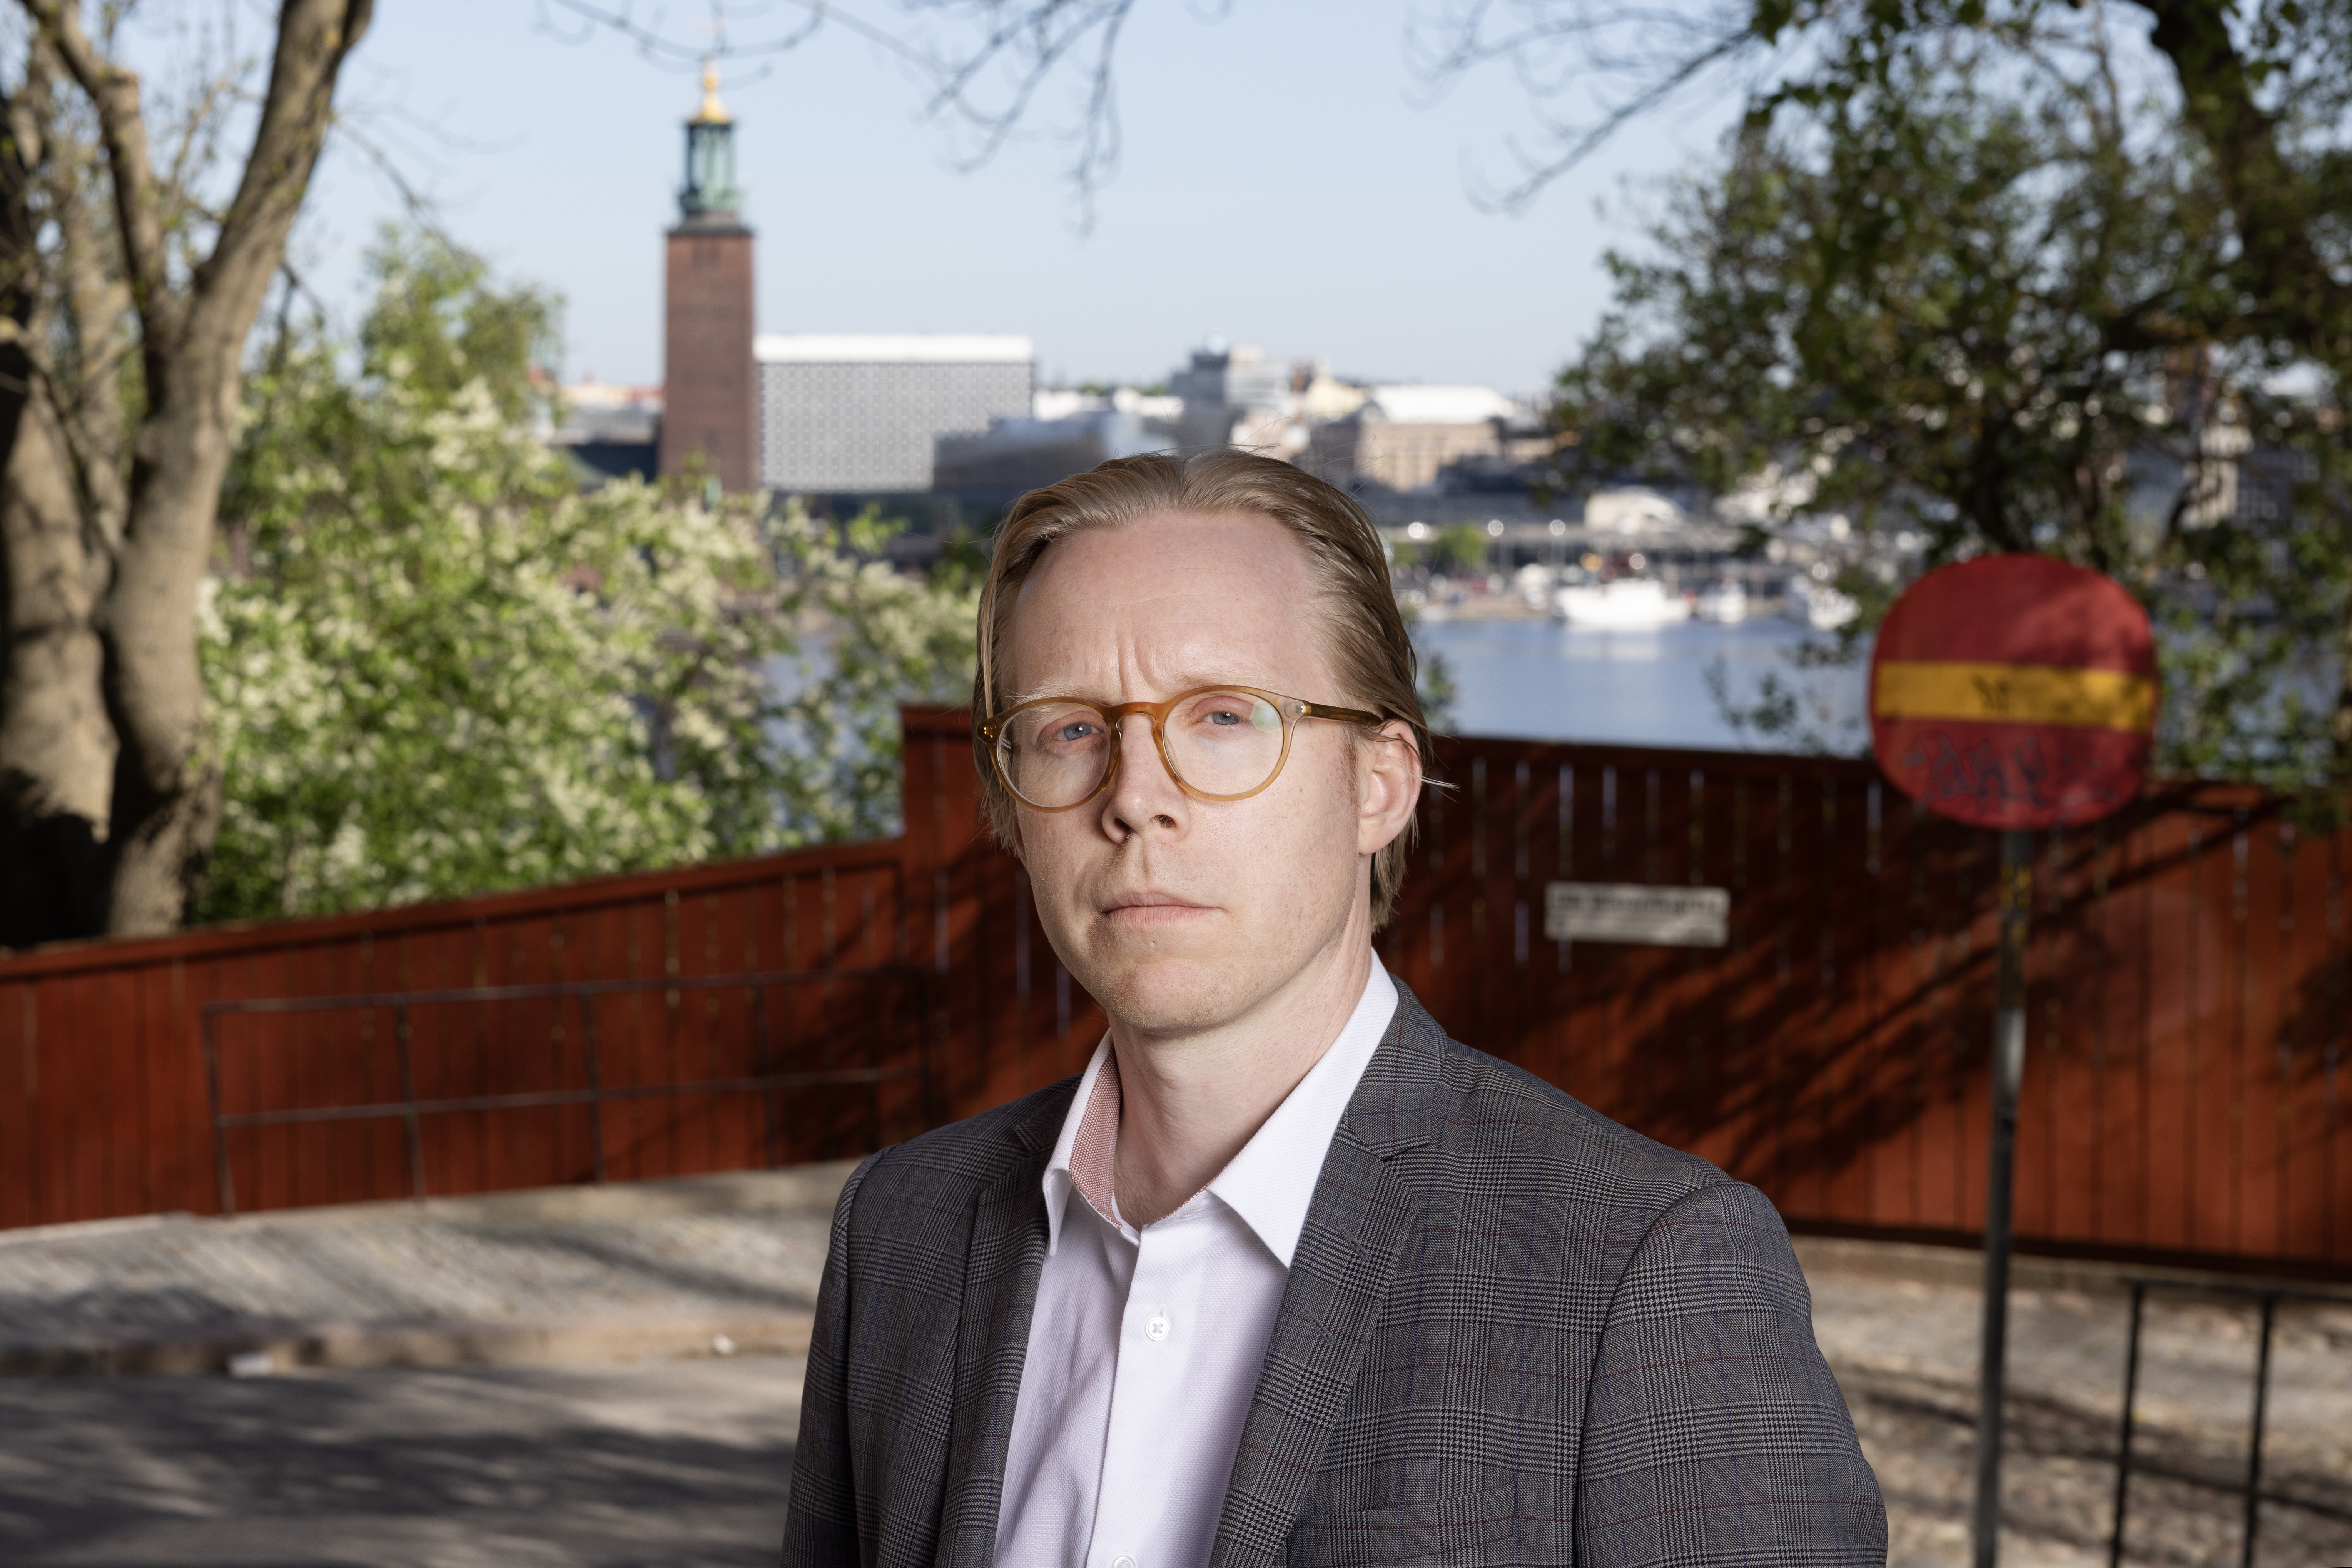 Advokaten Mattias mot bakgrund i stadsmiljö